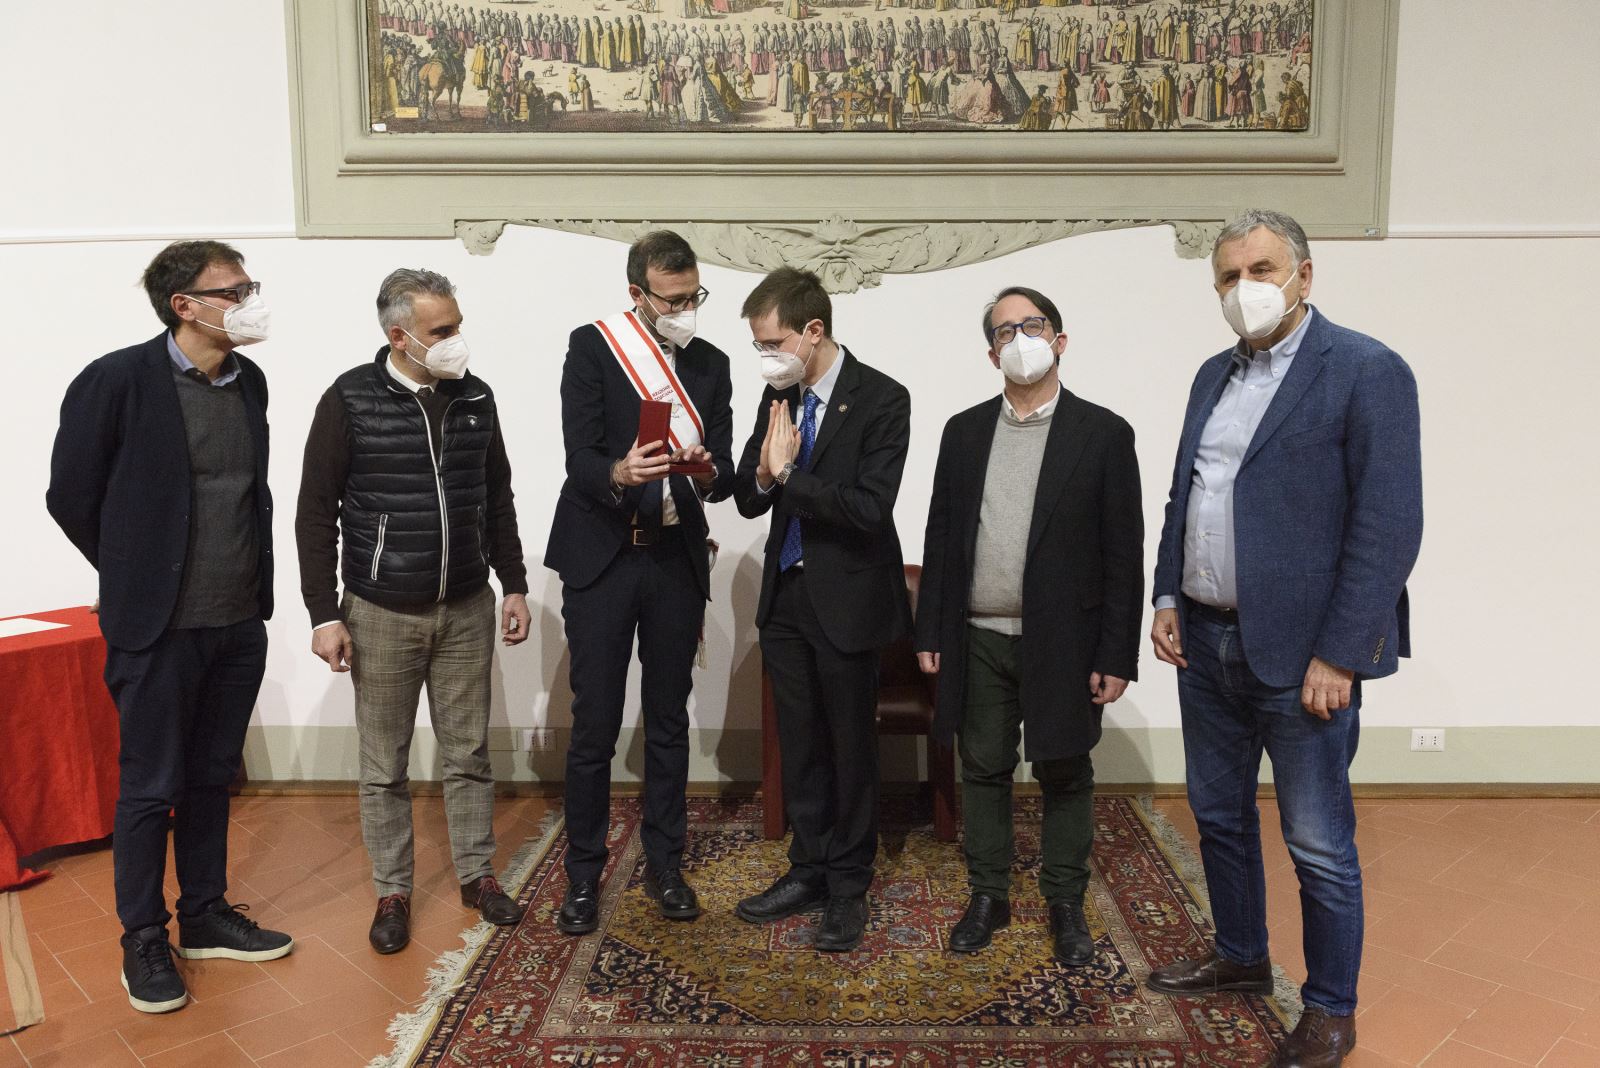 Da sinistra: Massimiliano Pescini, Diego Petrucci, Antonio Mazzeo, Giulio Deangeli, Marco Casucci, Vincenzo Ceccarelli